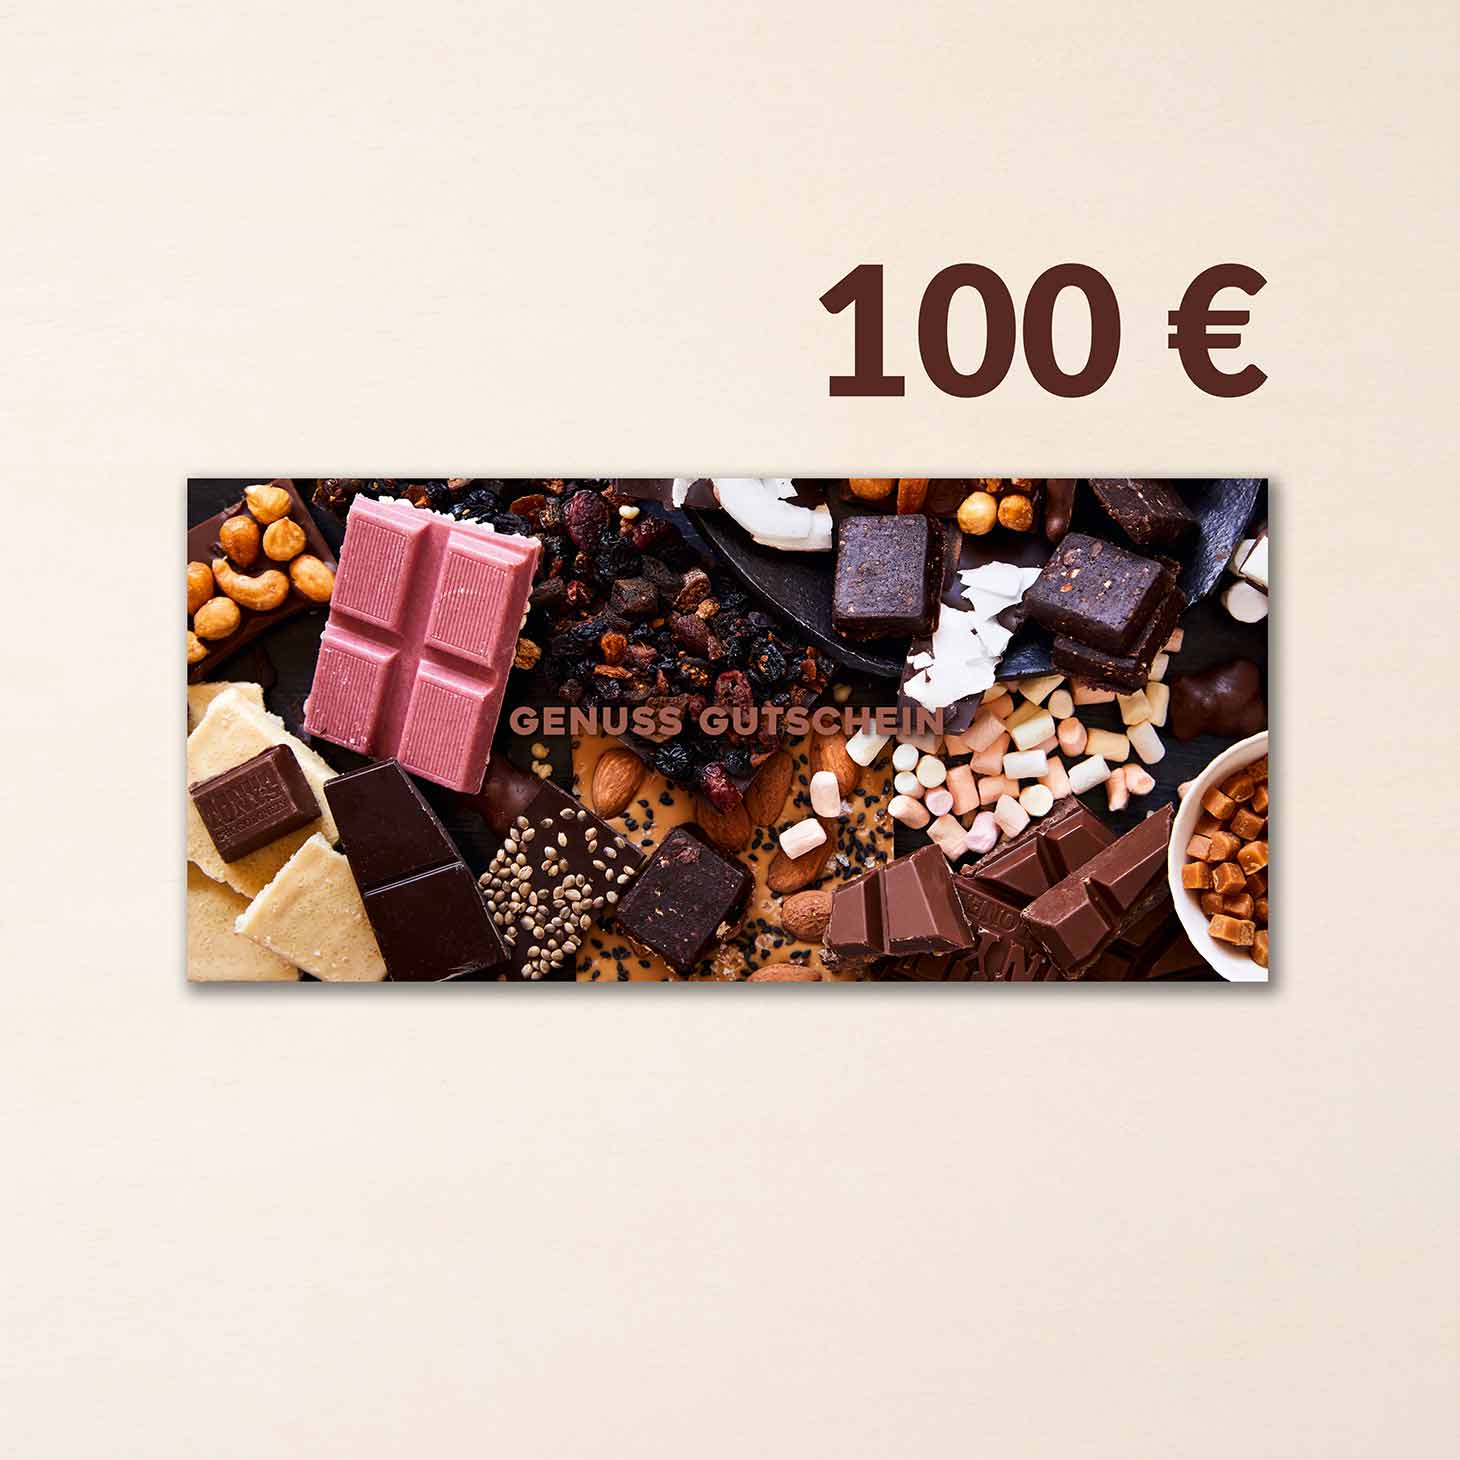 Gutschein für das CHOCOVERSUM im Wert von 100 €